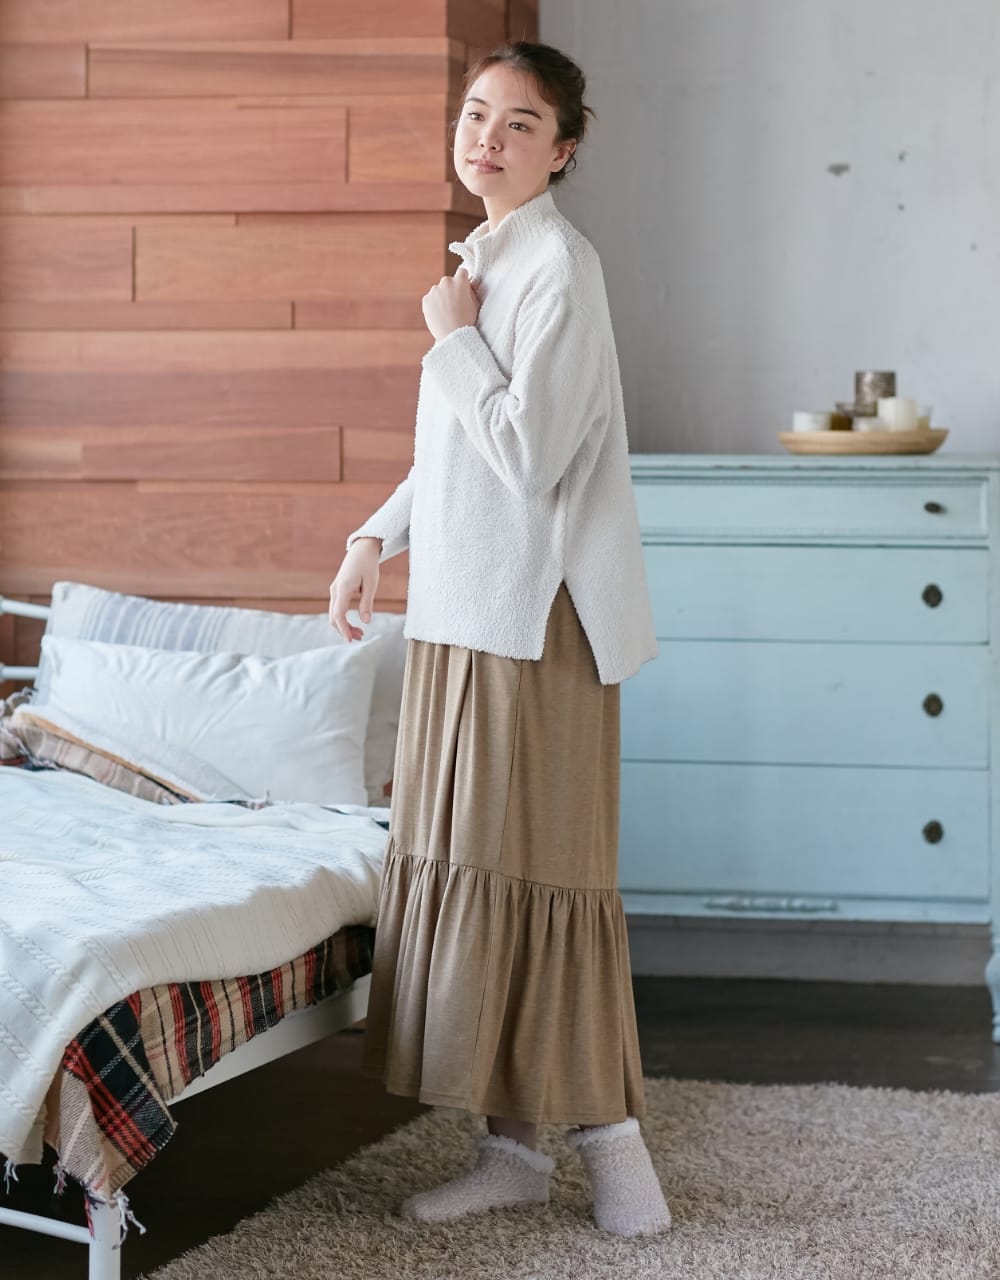 マシュマロニットハーフZIPプルオーバー、マシュマロニットルームシューズを着用している女性モデルの写真